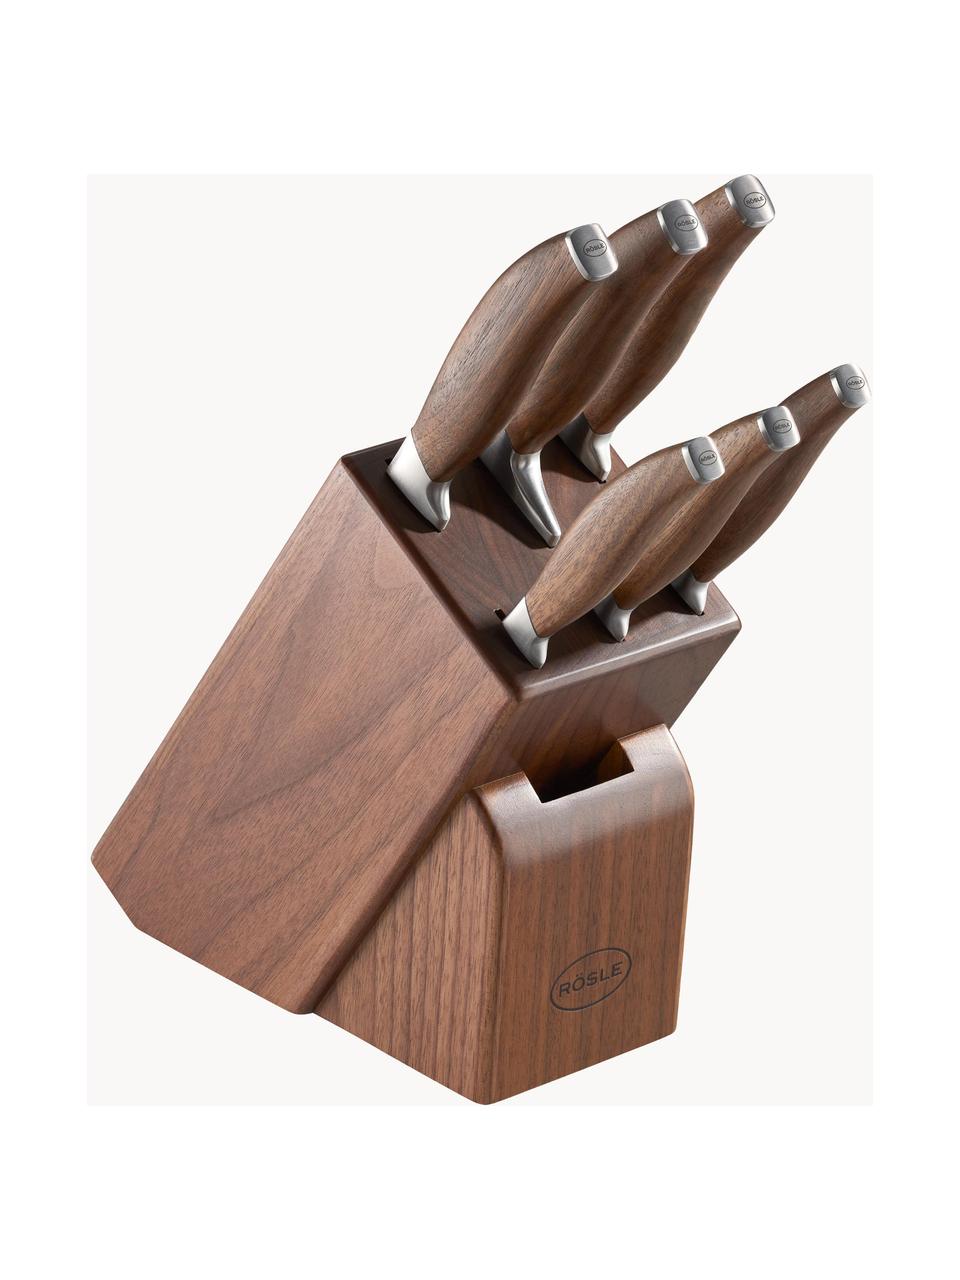 Messerblock Passion mit 6 Messern, Messer: rostfreier Stahl X50CrMOV, Griff: Walnussholz, Silberfarben, Dunkles Holz, Verschiedene Größen